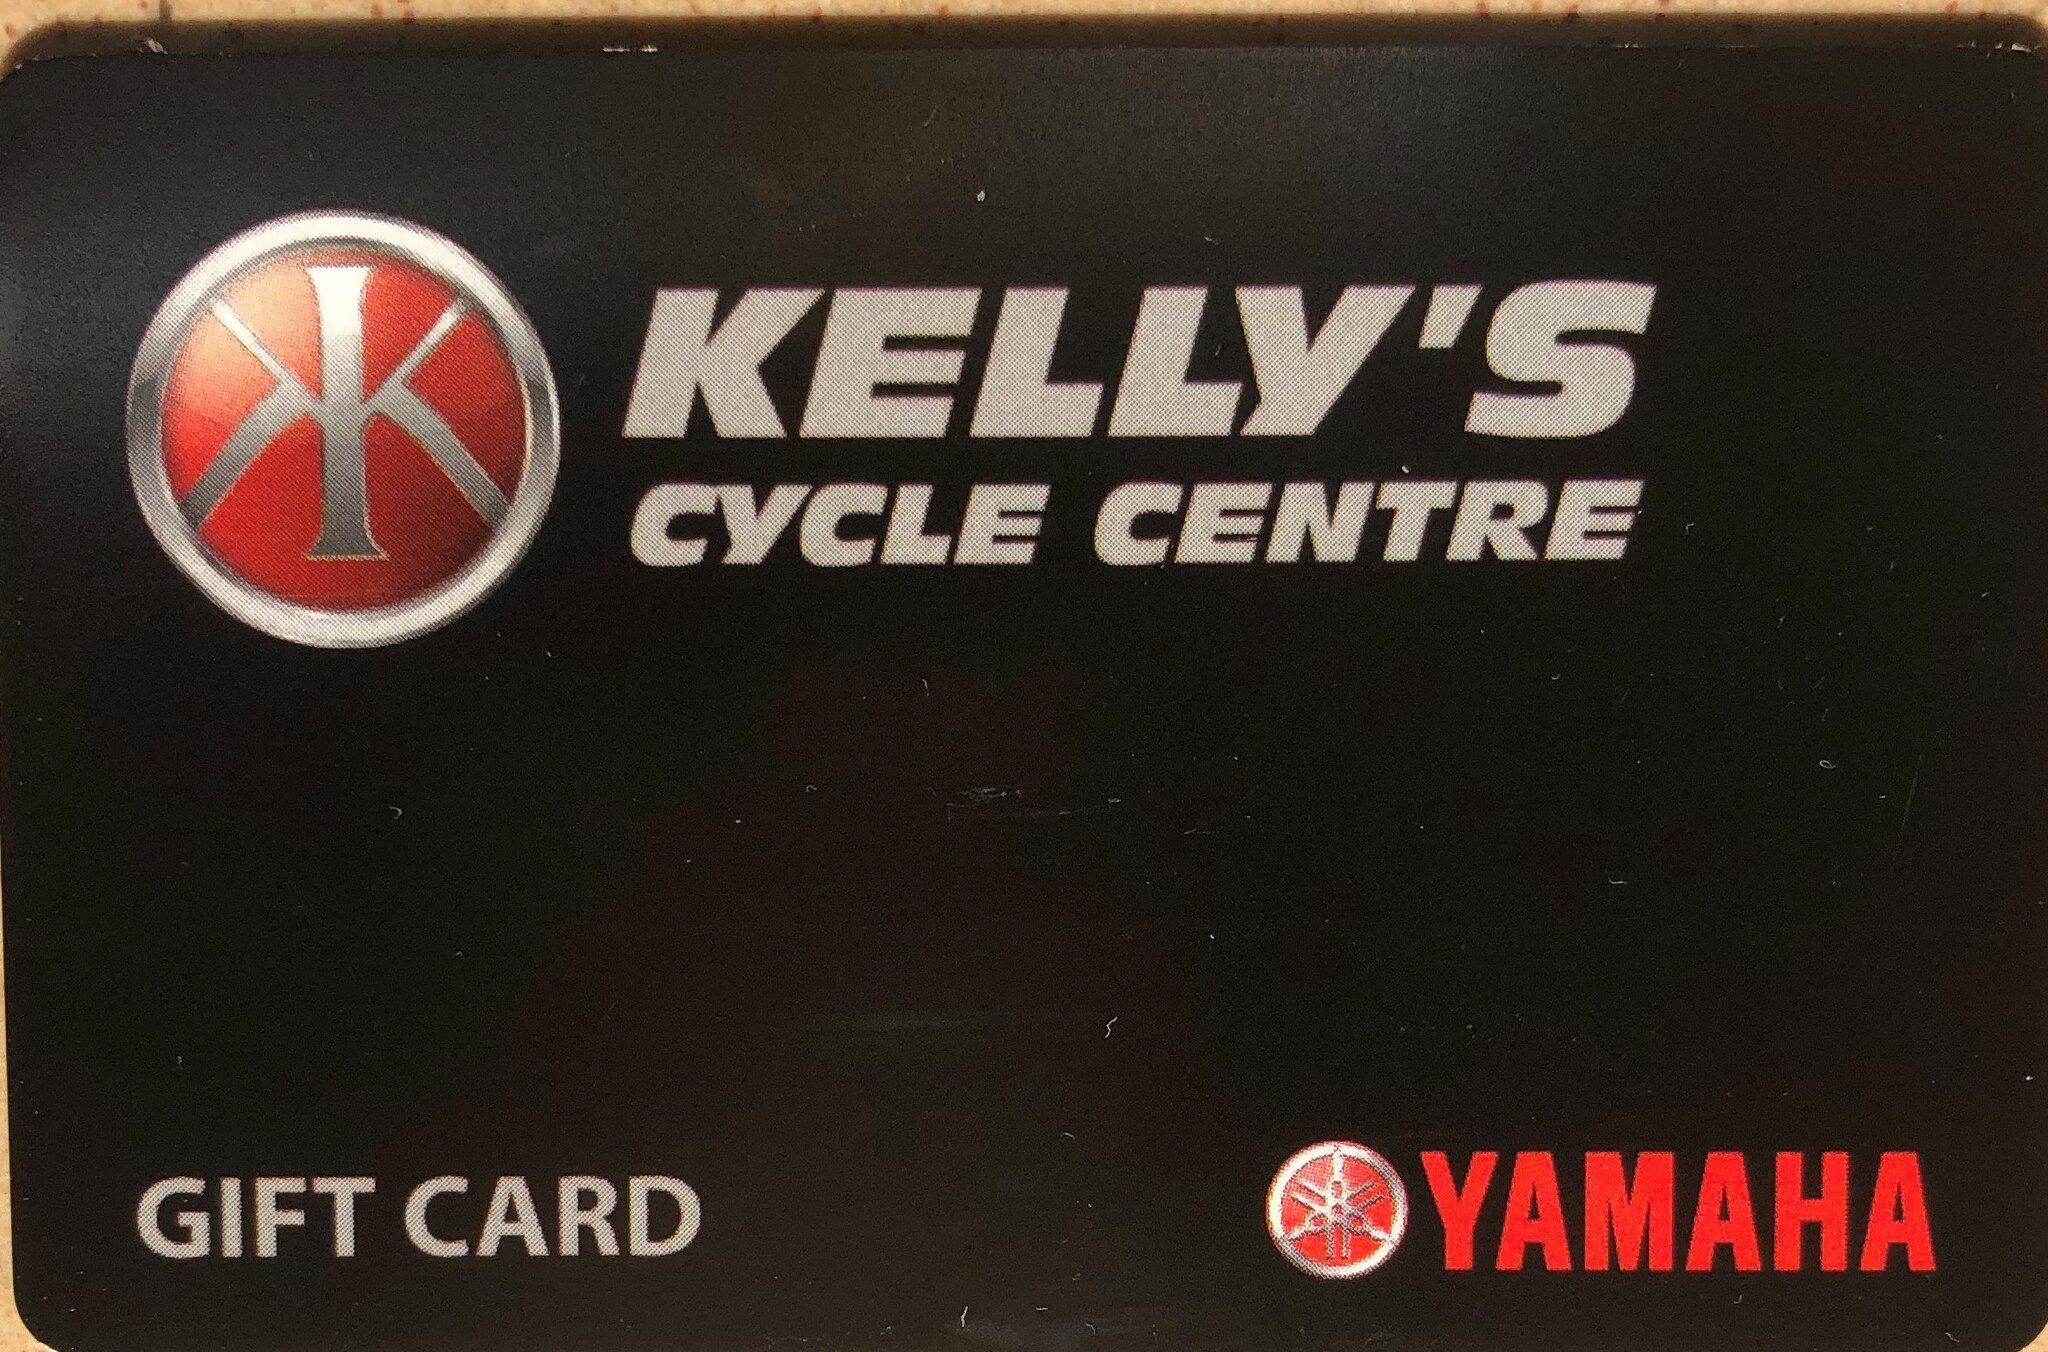 Kellys_Gift_Card